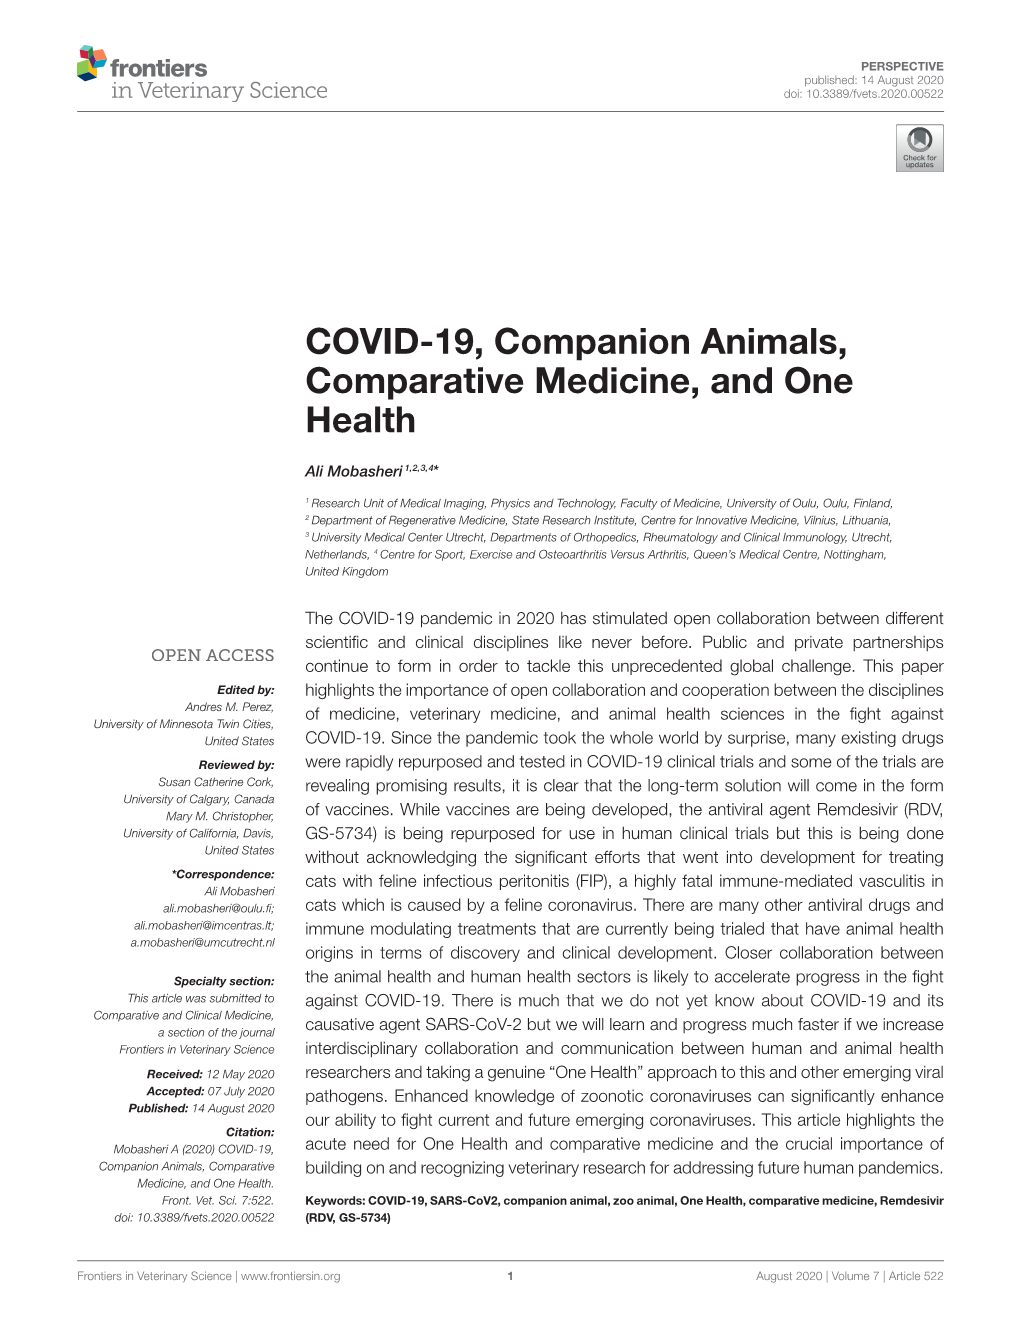 COVID-19, Companion Animals, Comparative Medicine, and One Health